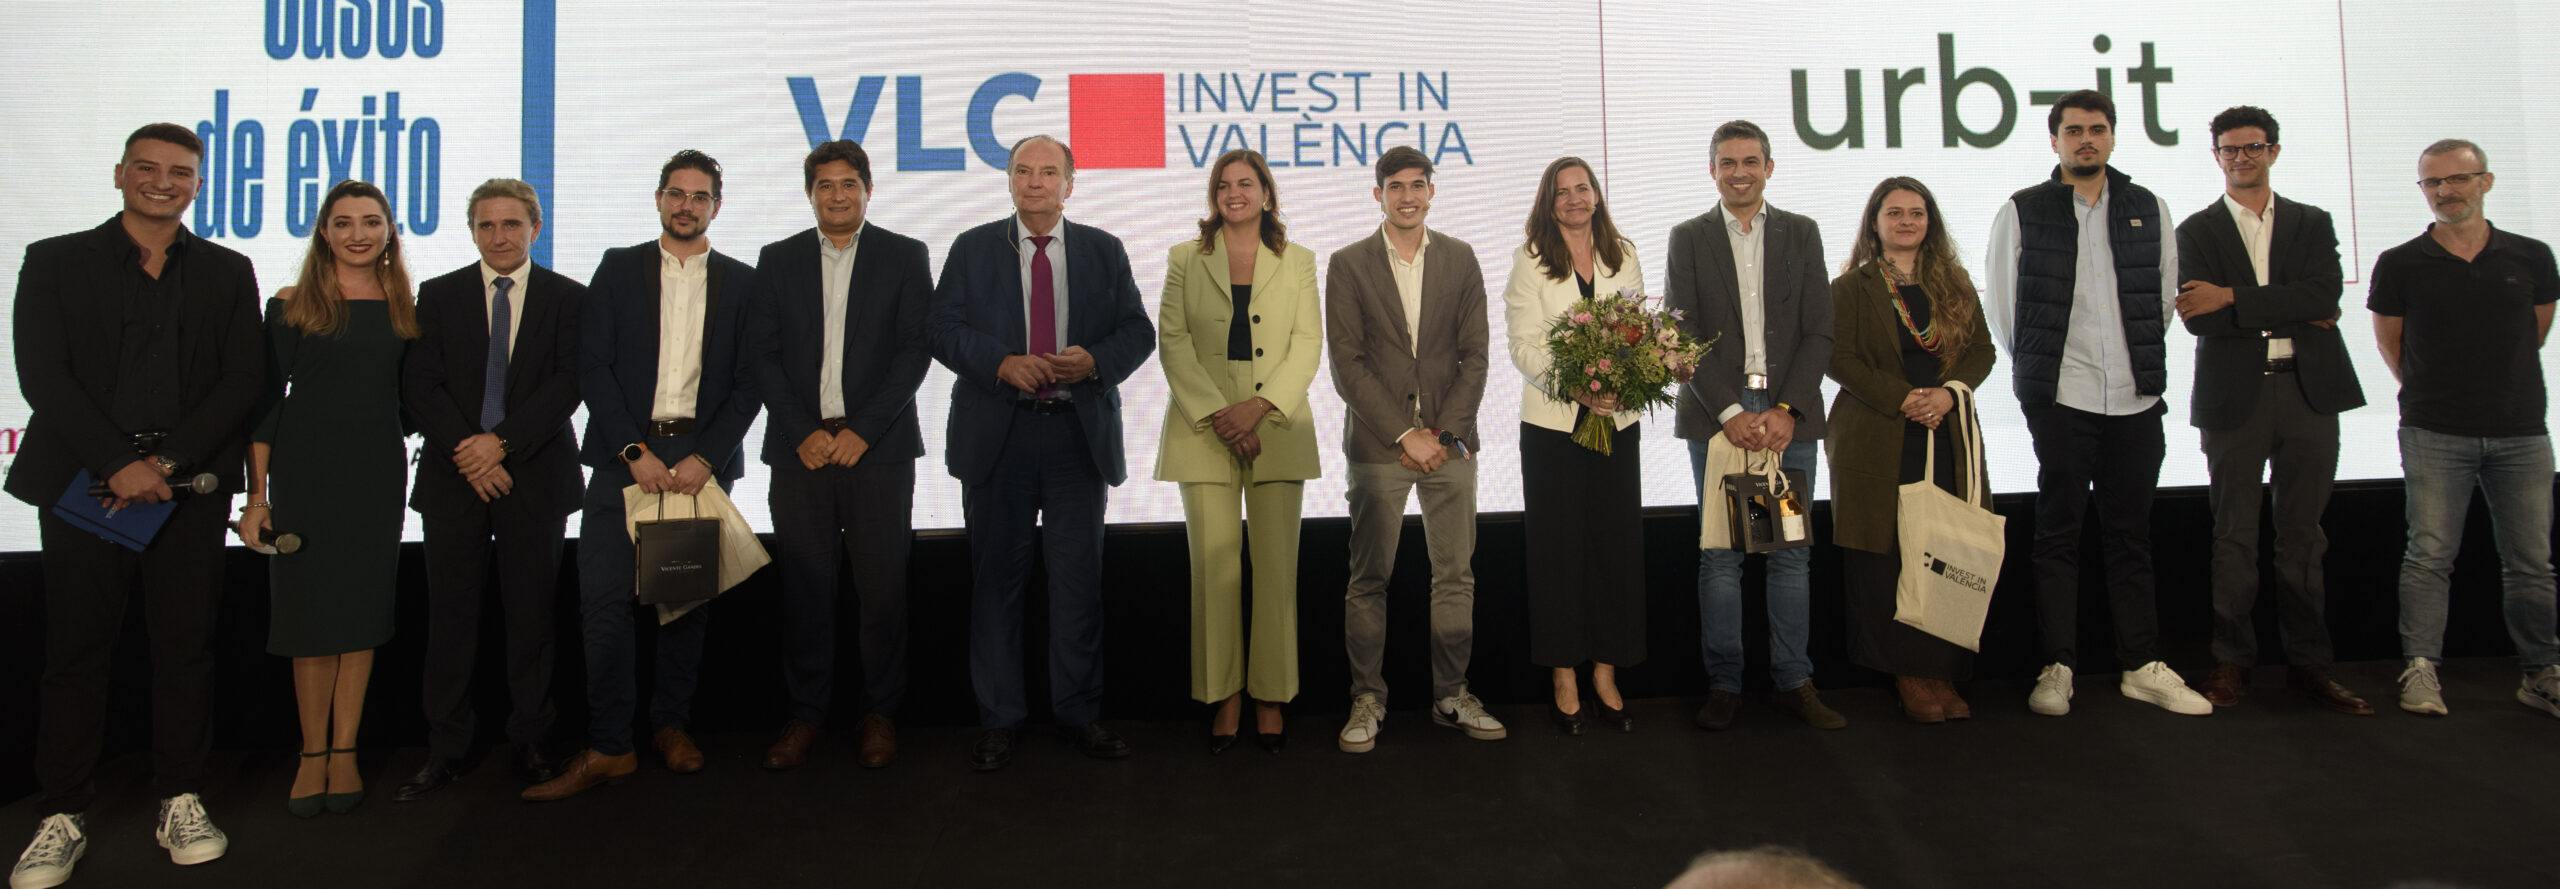 Invest in València attire 10 entreprises au cours de sa première année, avec un investissement de 5,2 millions d’euros et la création de 520 emplois dans la ville.